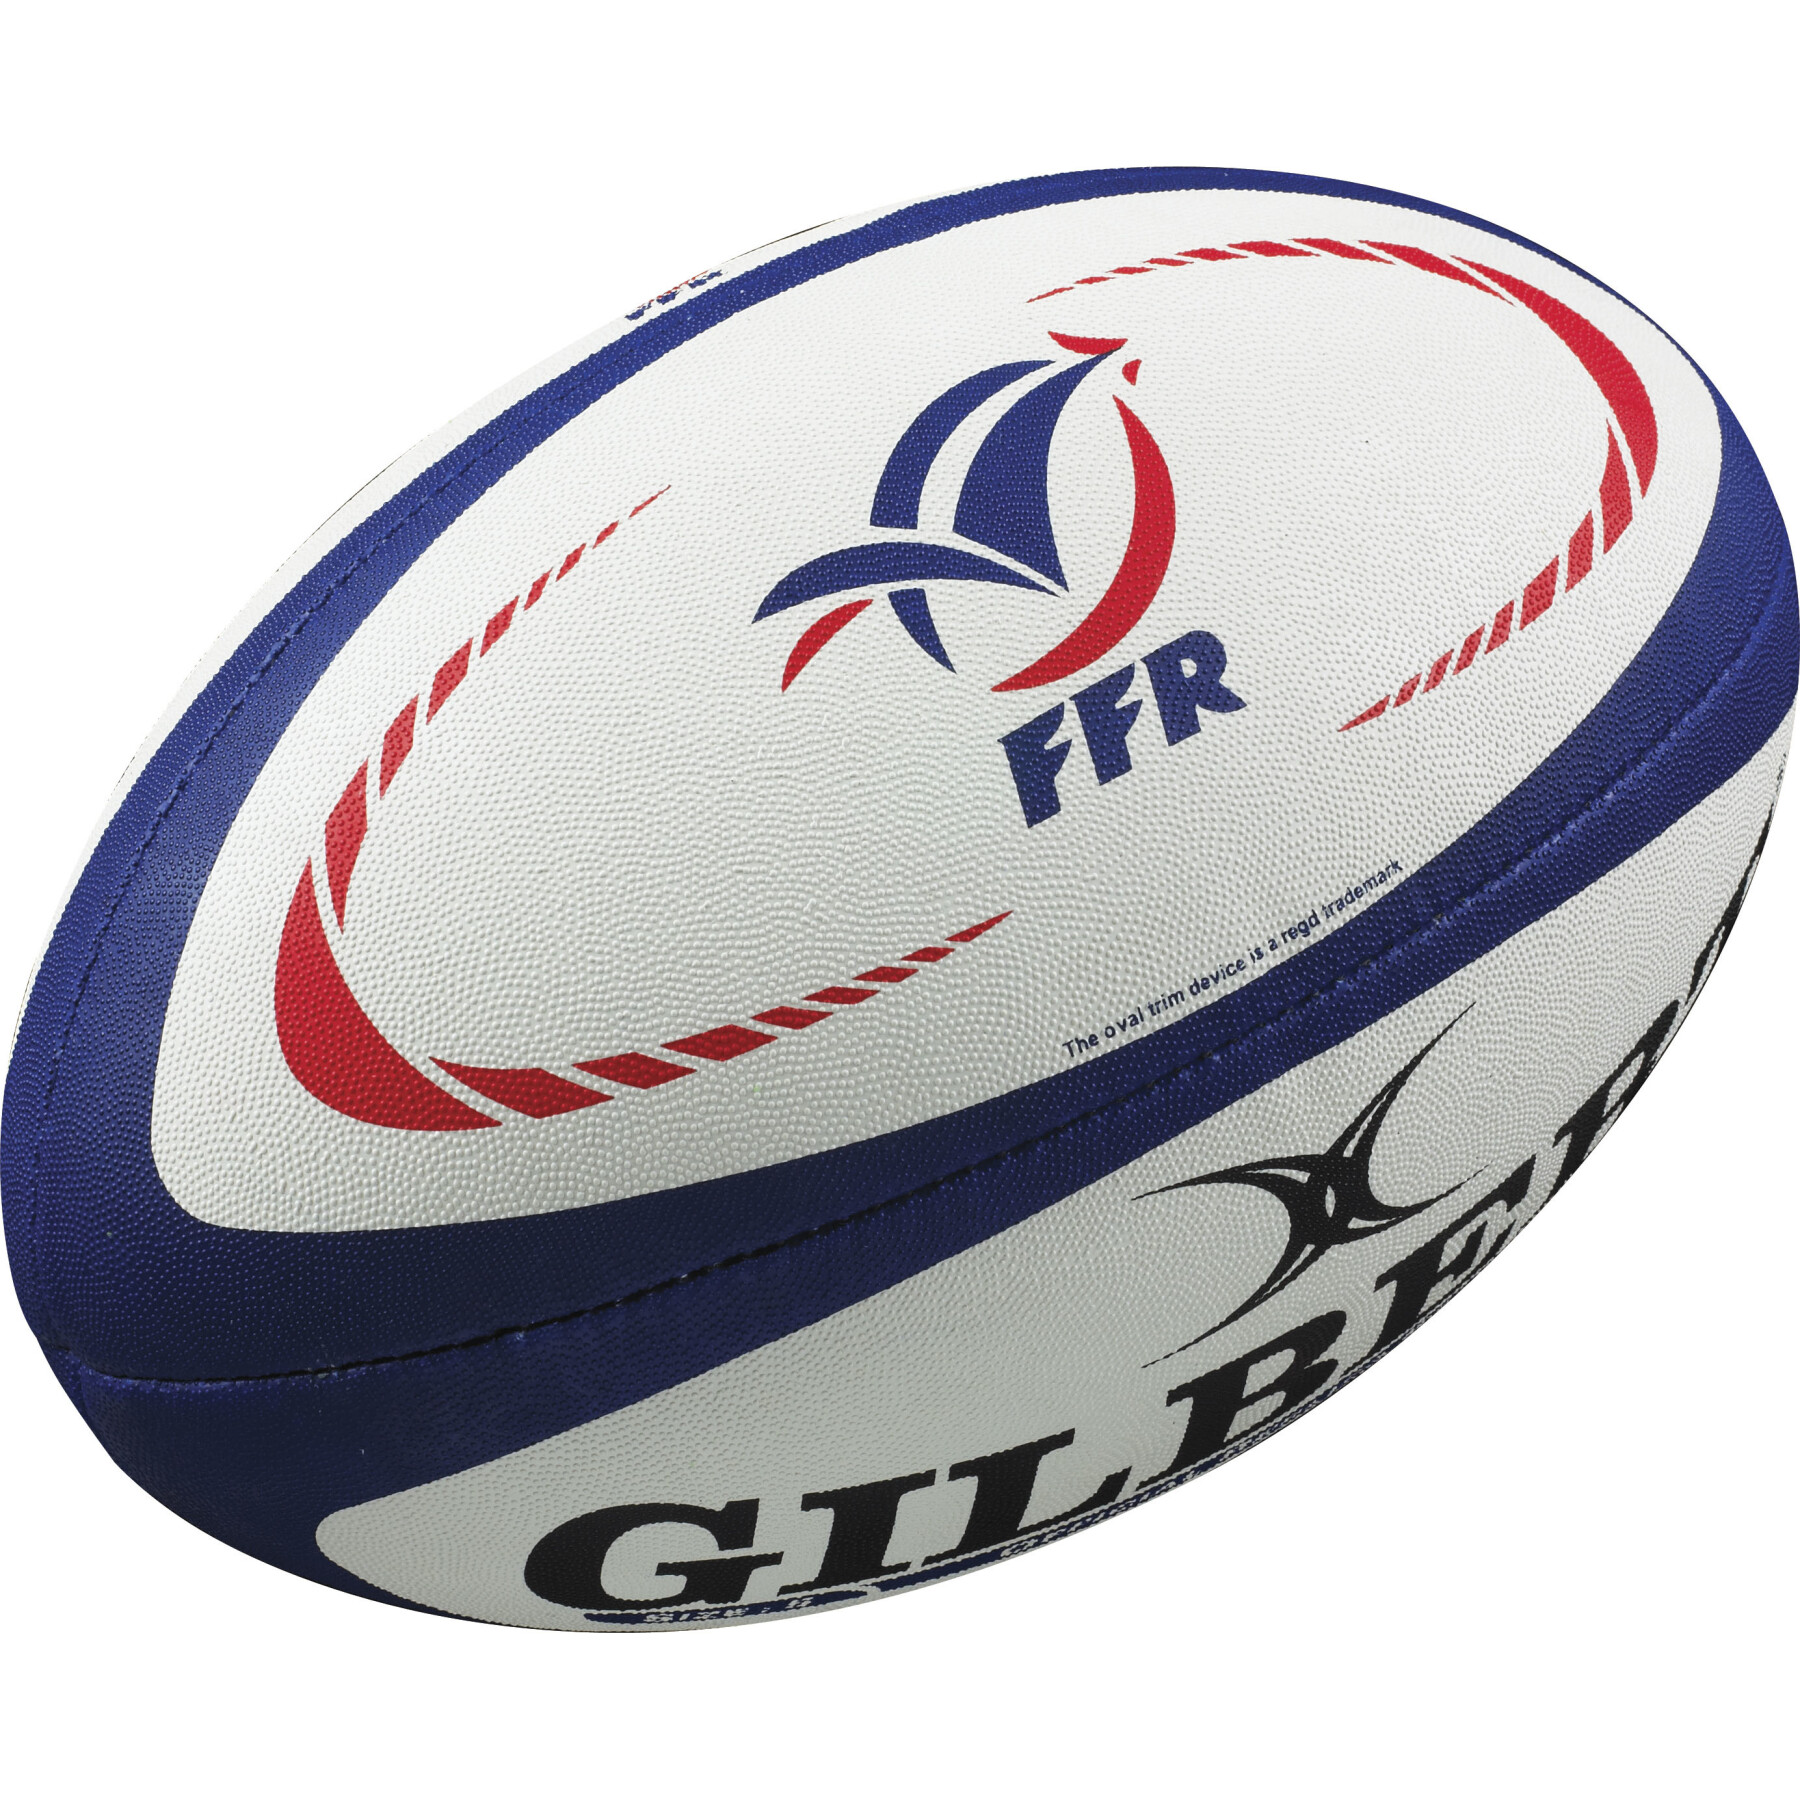 Bola de Rugby replica Gilbert France (tamanho 5)